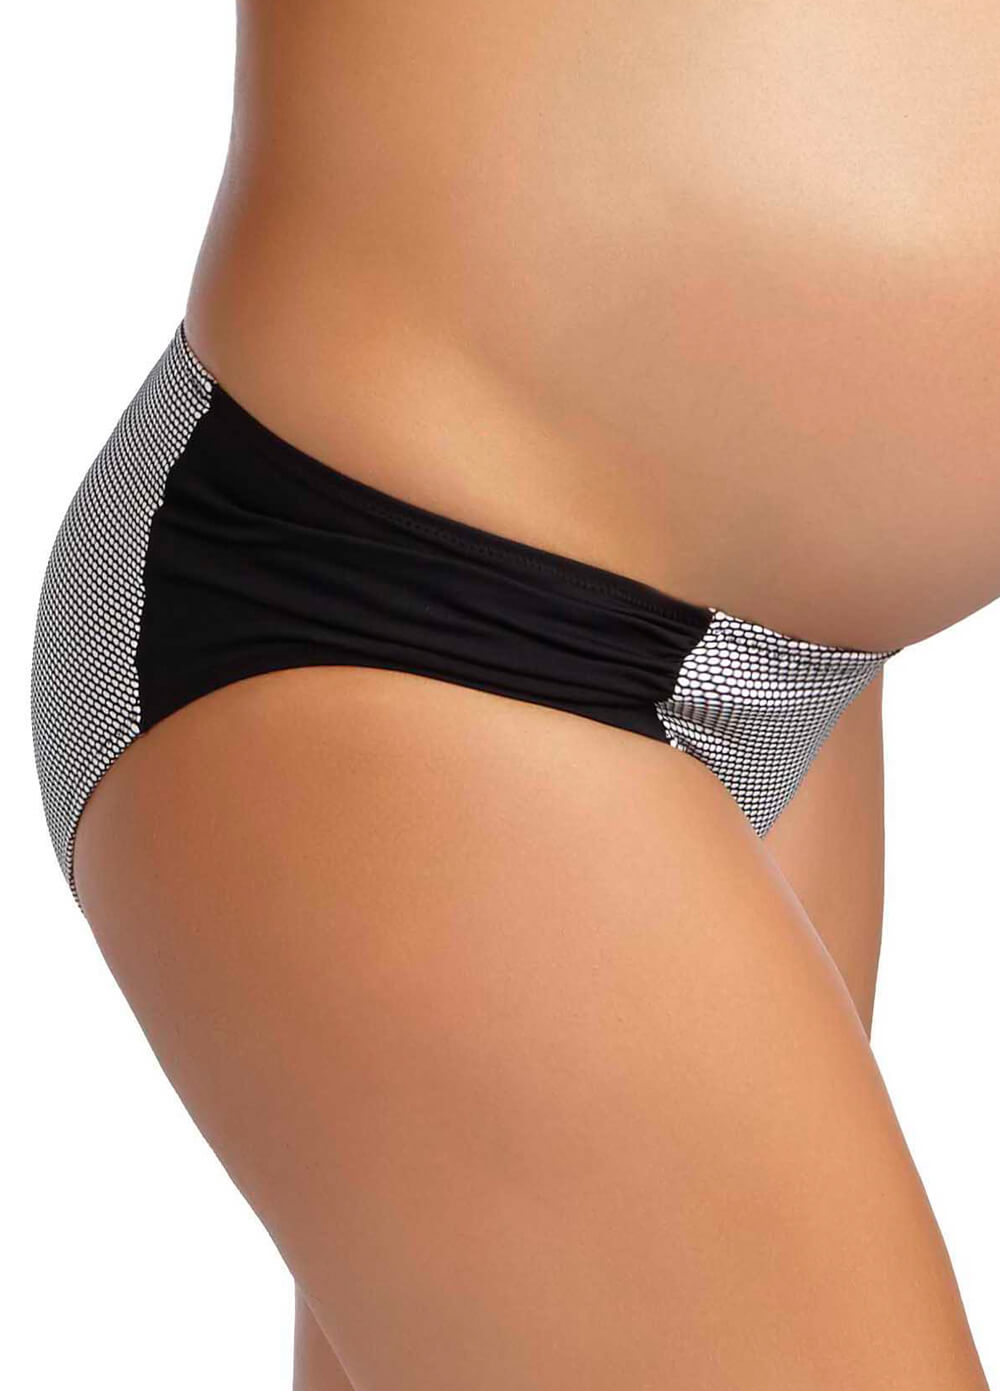 Montego Bay Maternity Swimwear Bikini Set by Pez DOr